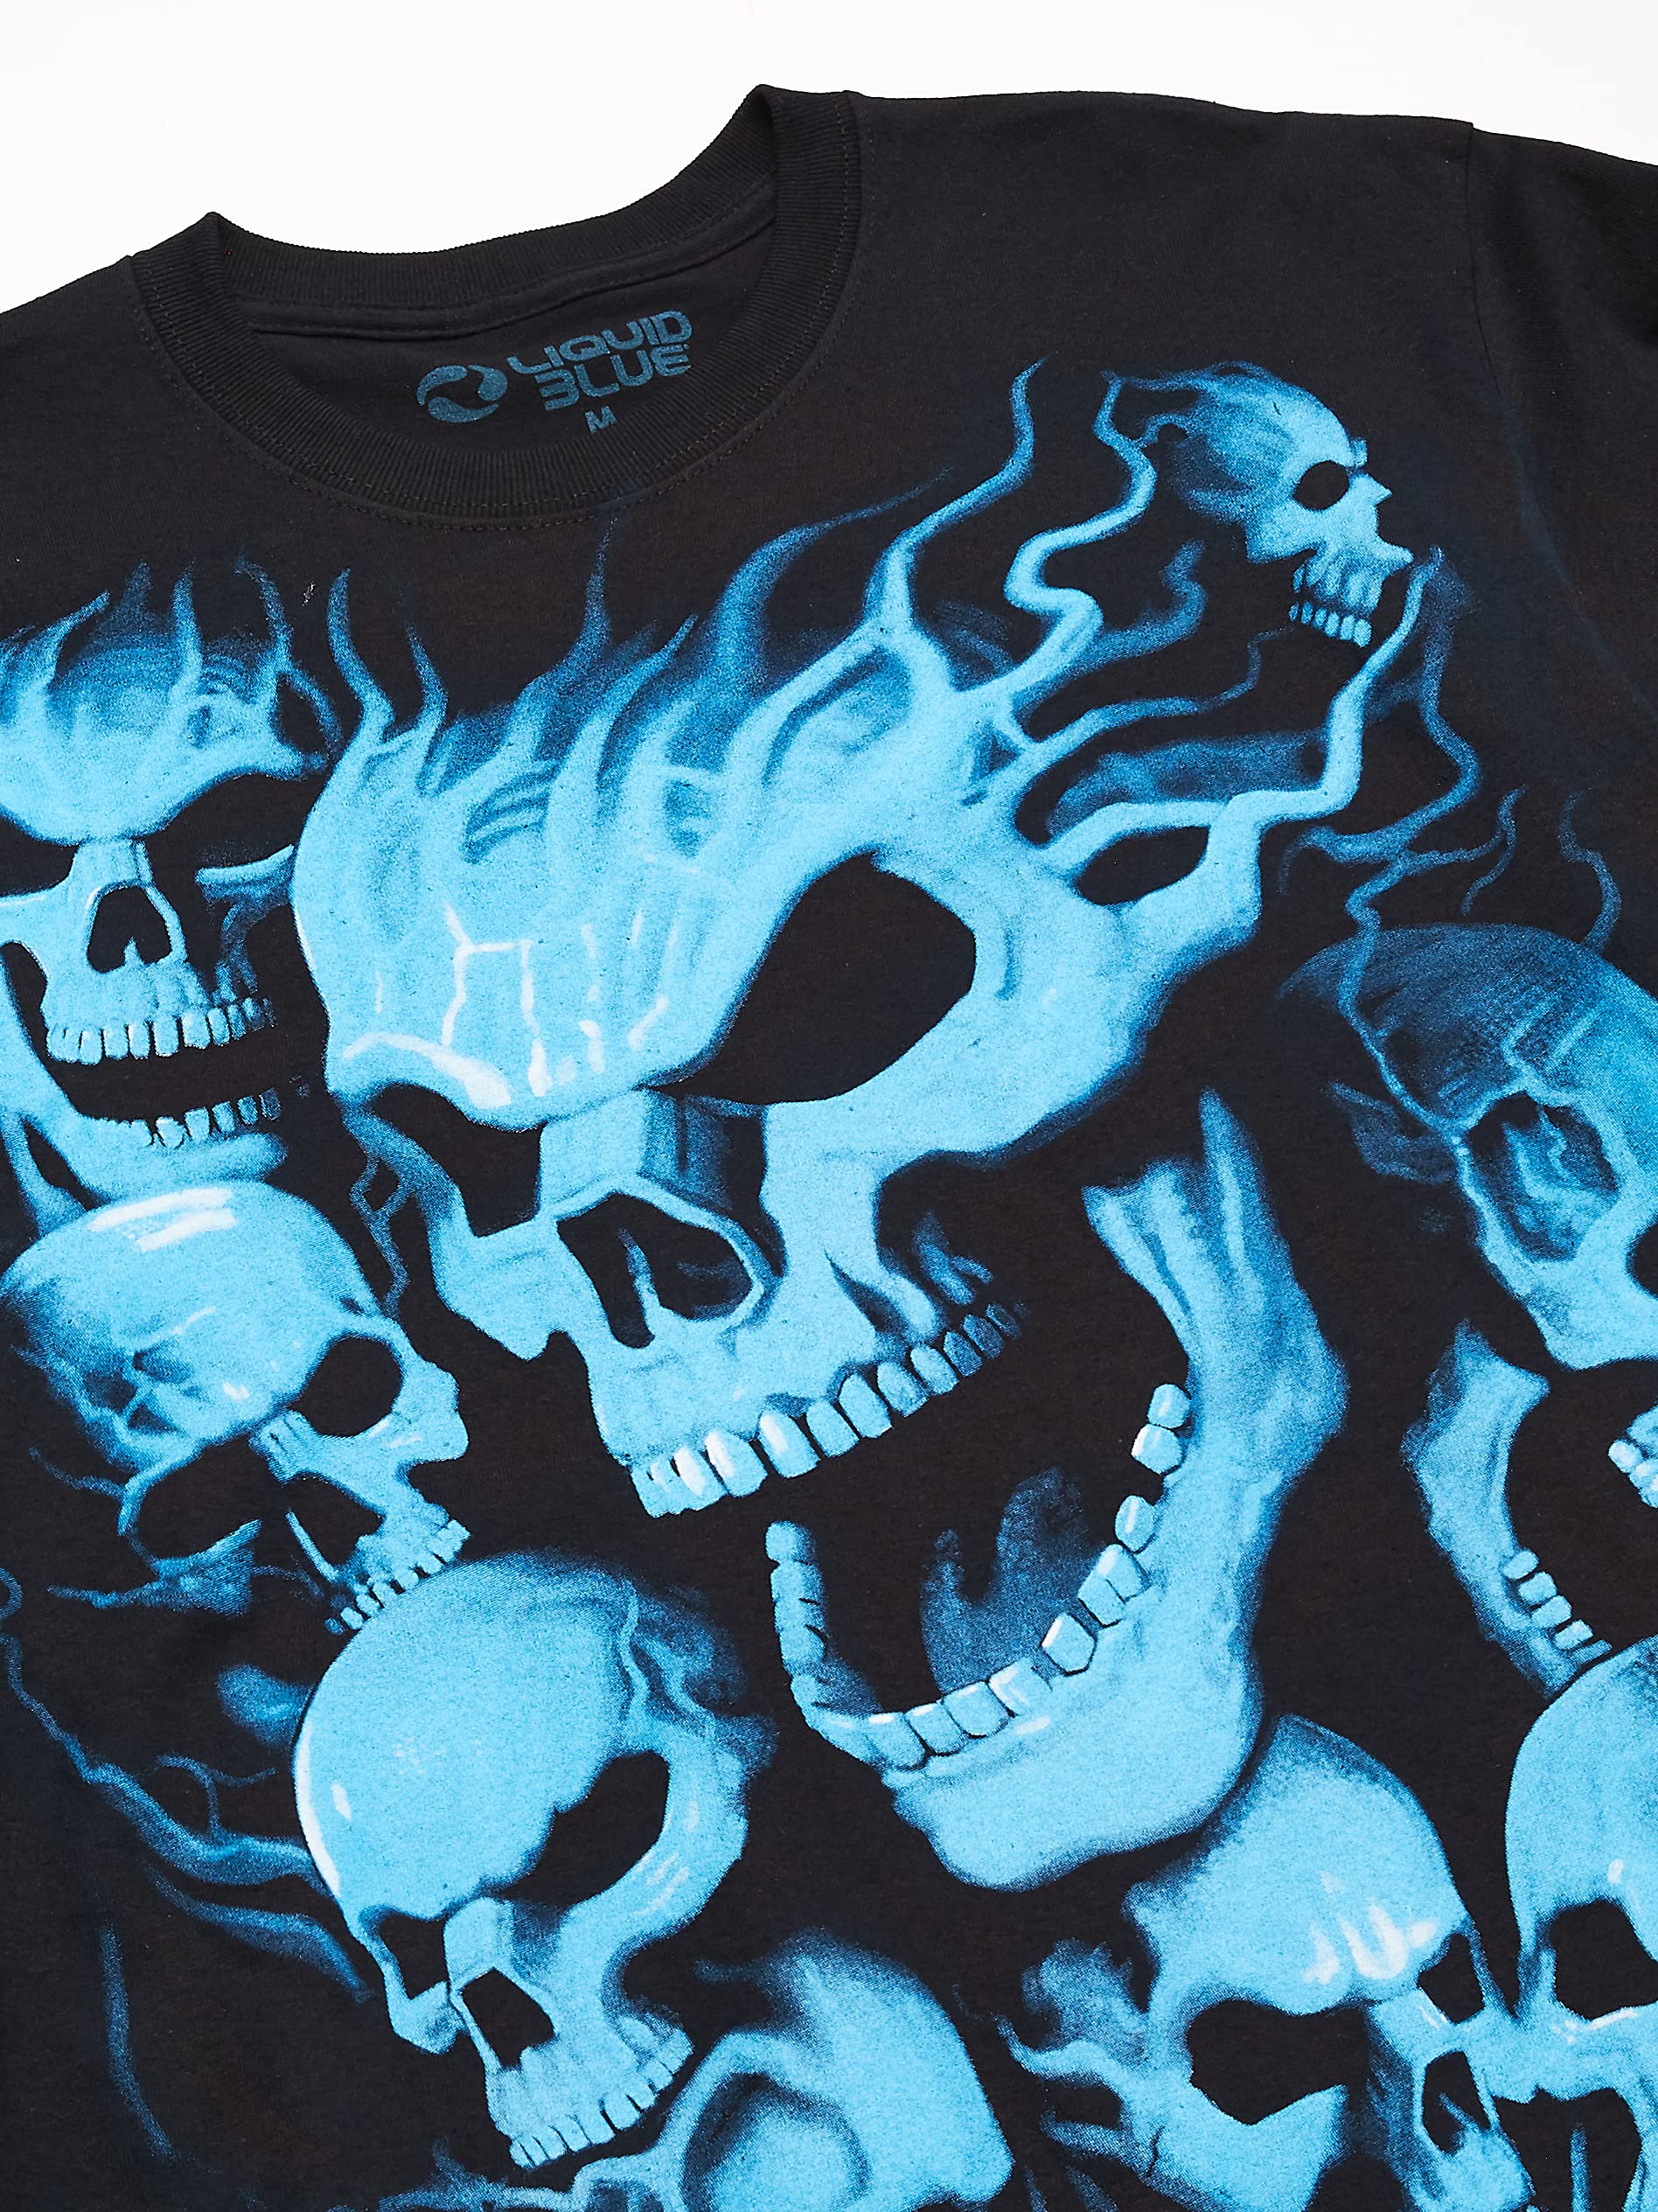 Liquid Blue Men's Vampire Skulls T-Shirt